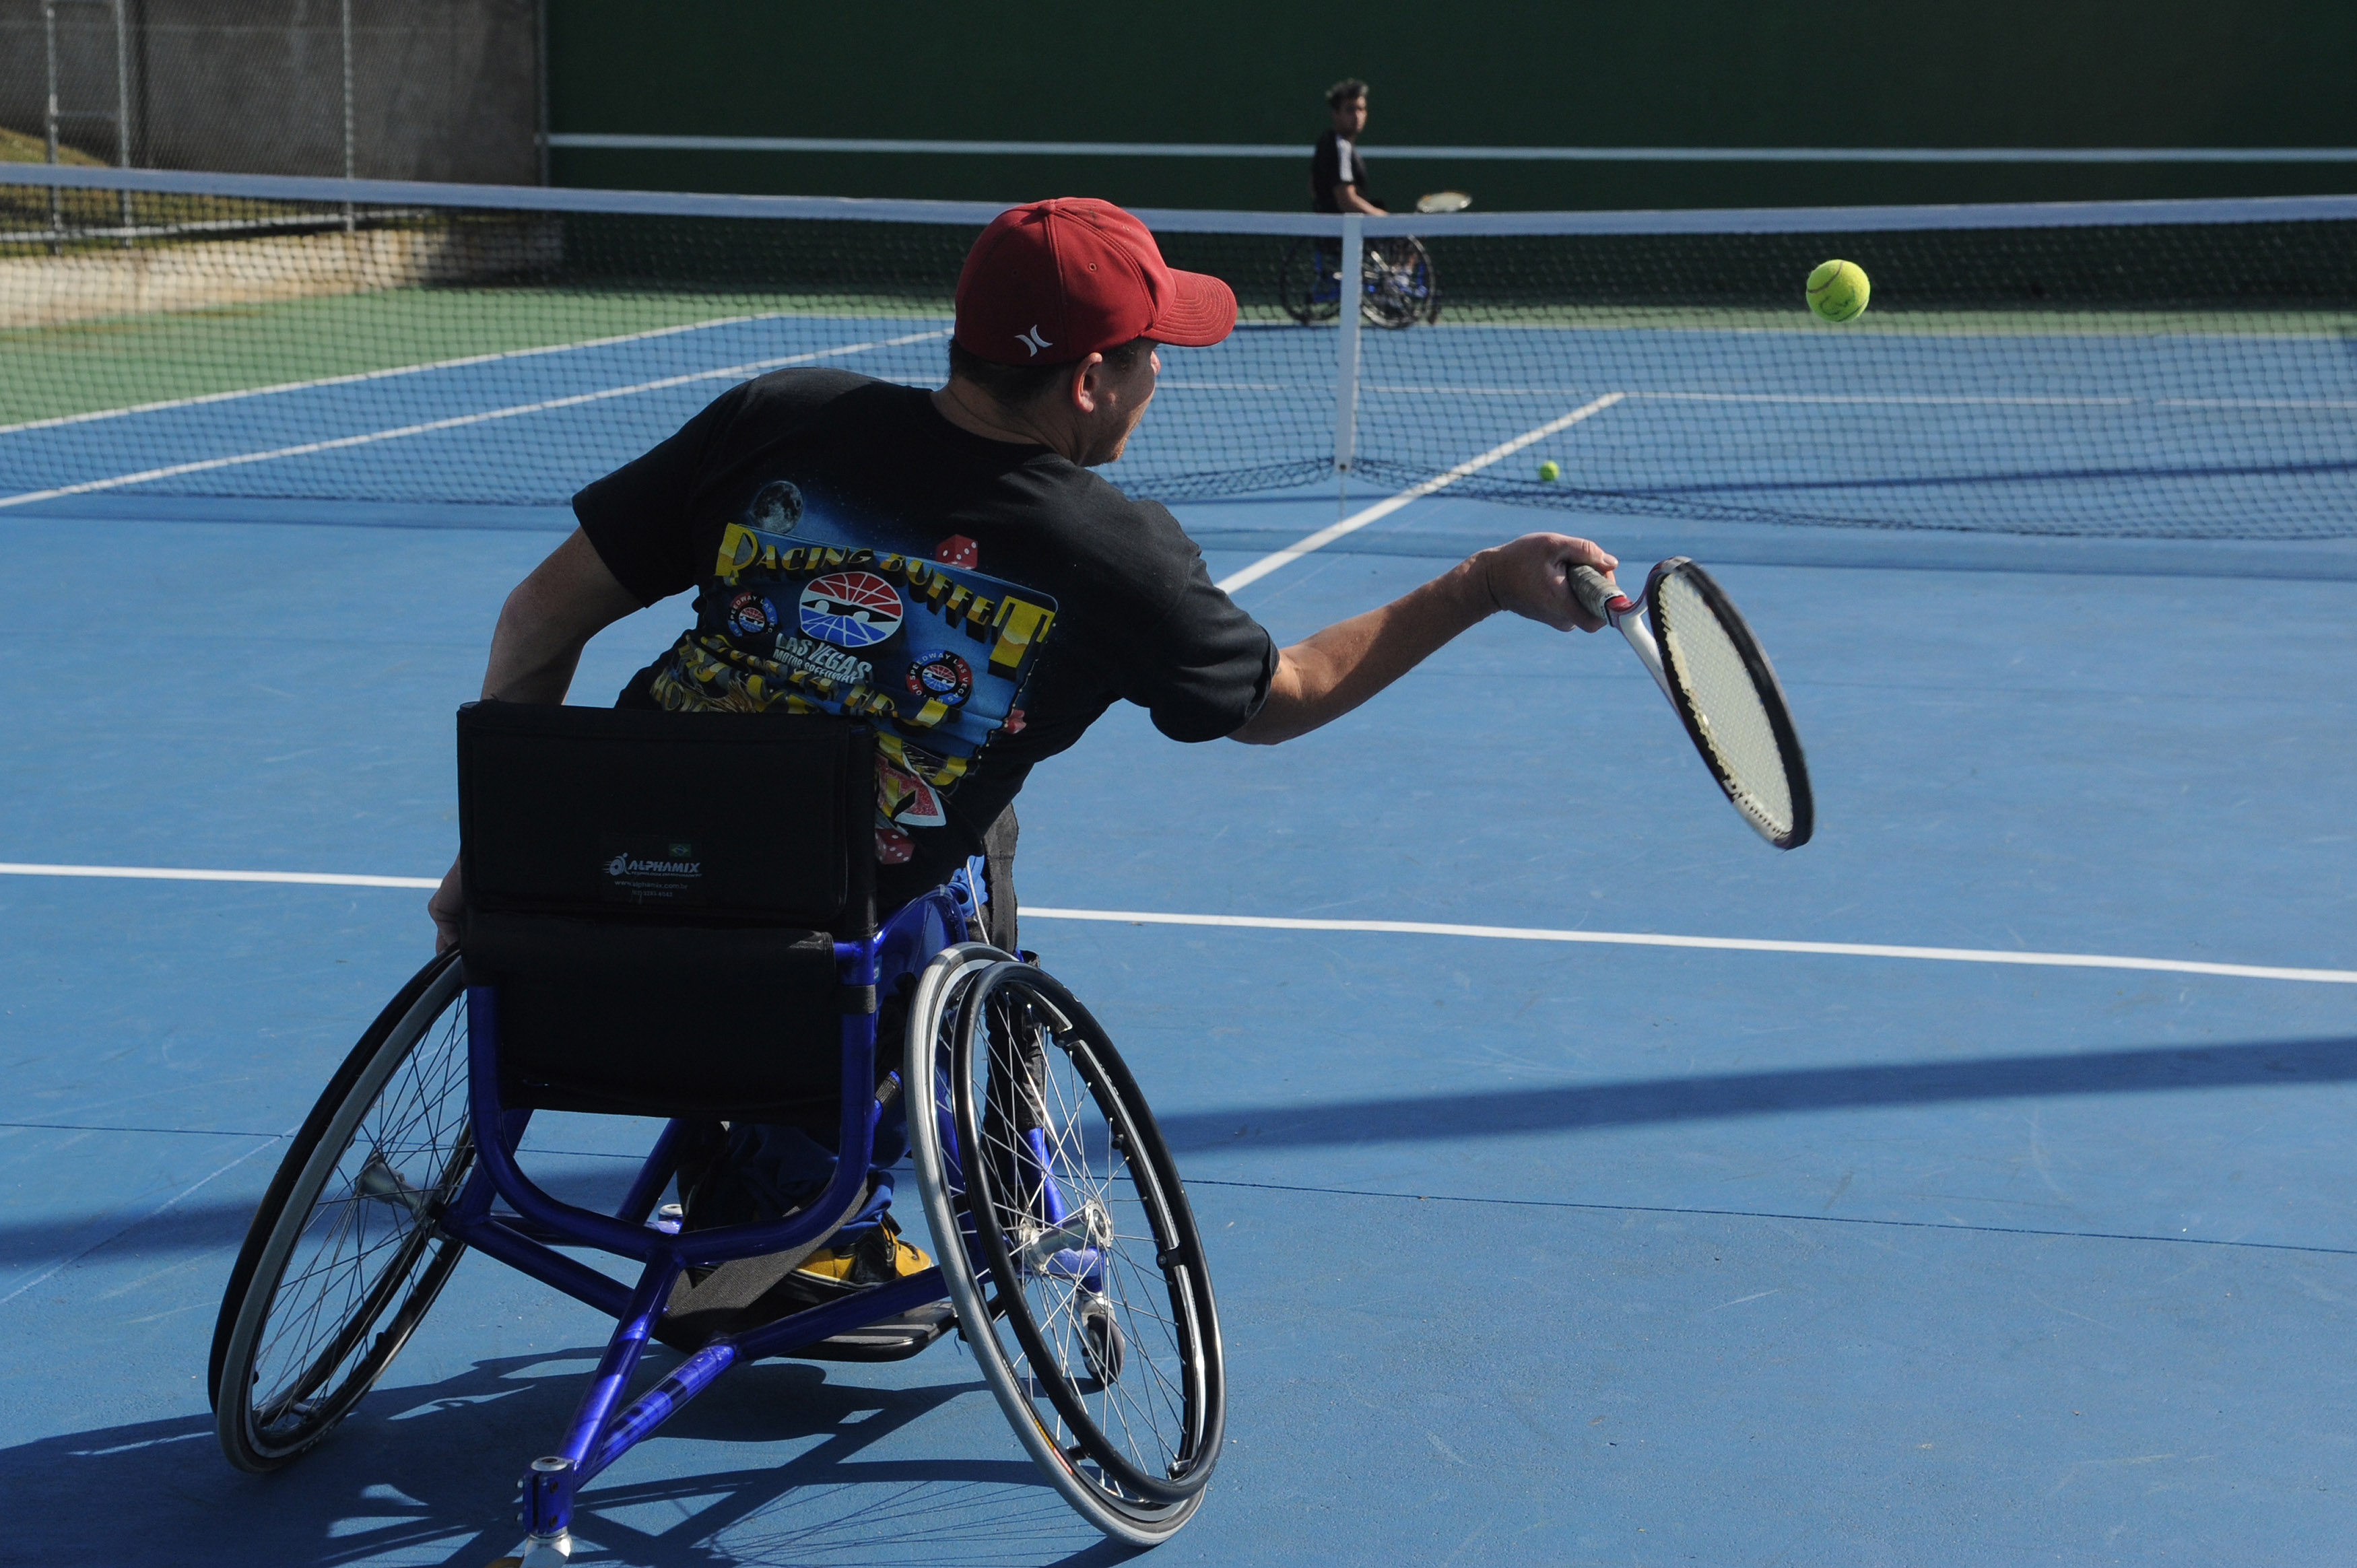 Tênis em Cadeira de Rodas Curitiba - PR